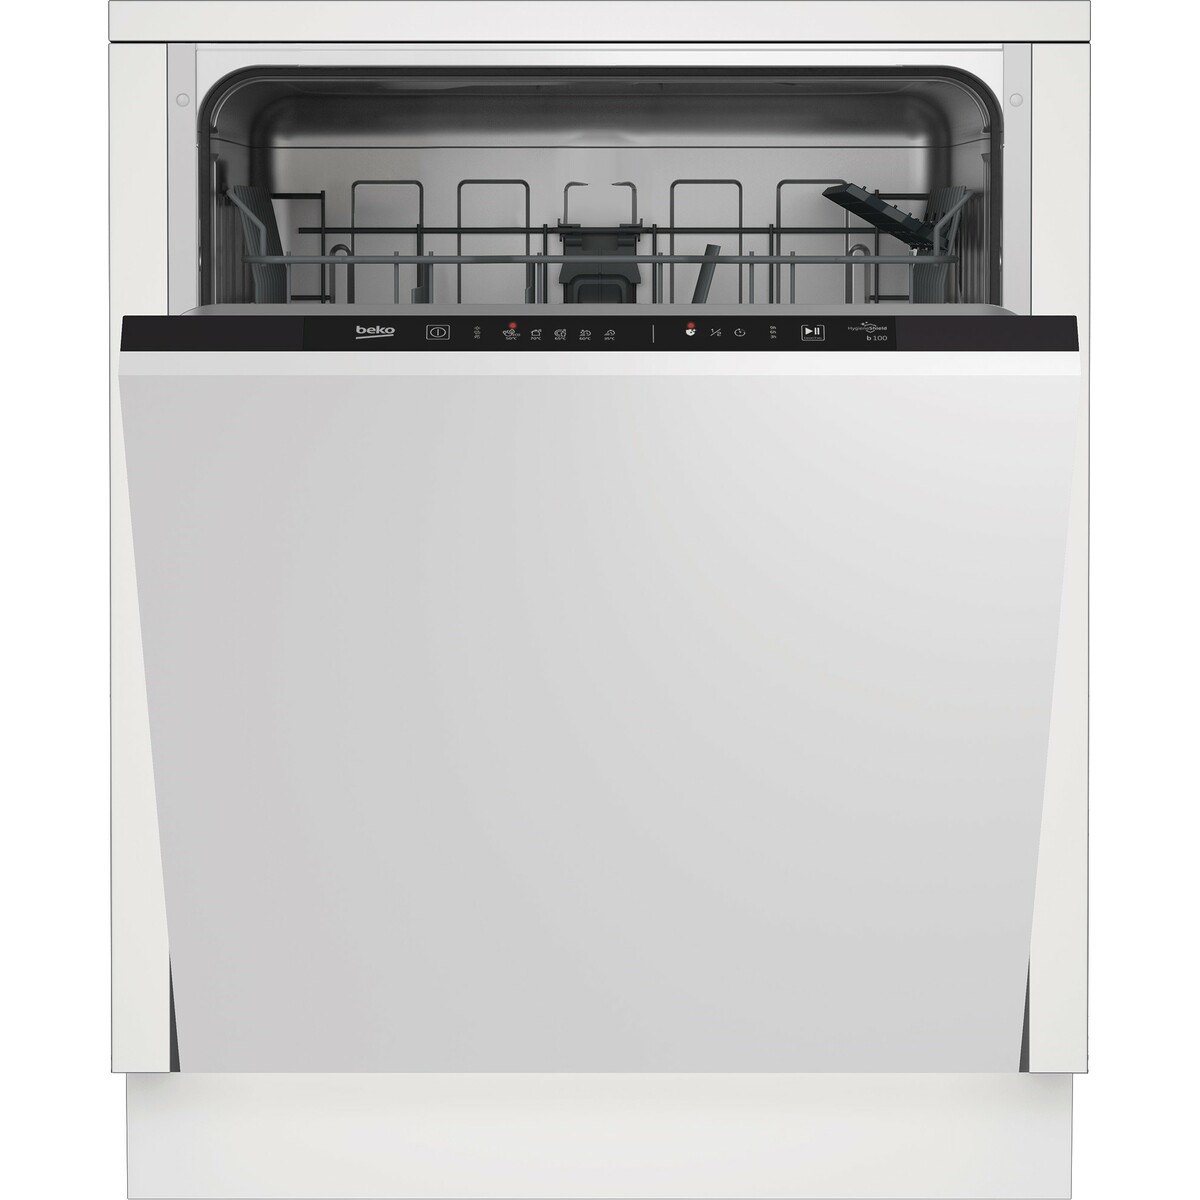 Посудомоечная машина Beko BDIN15360, белый